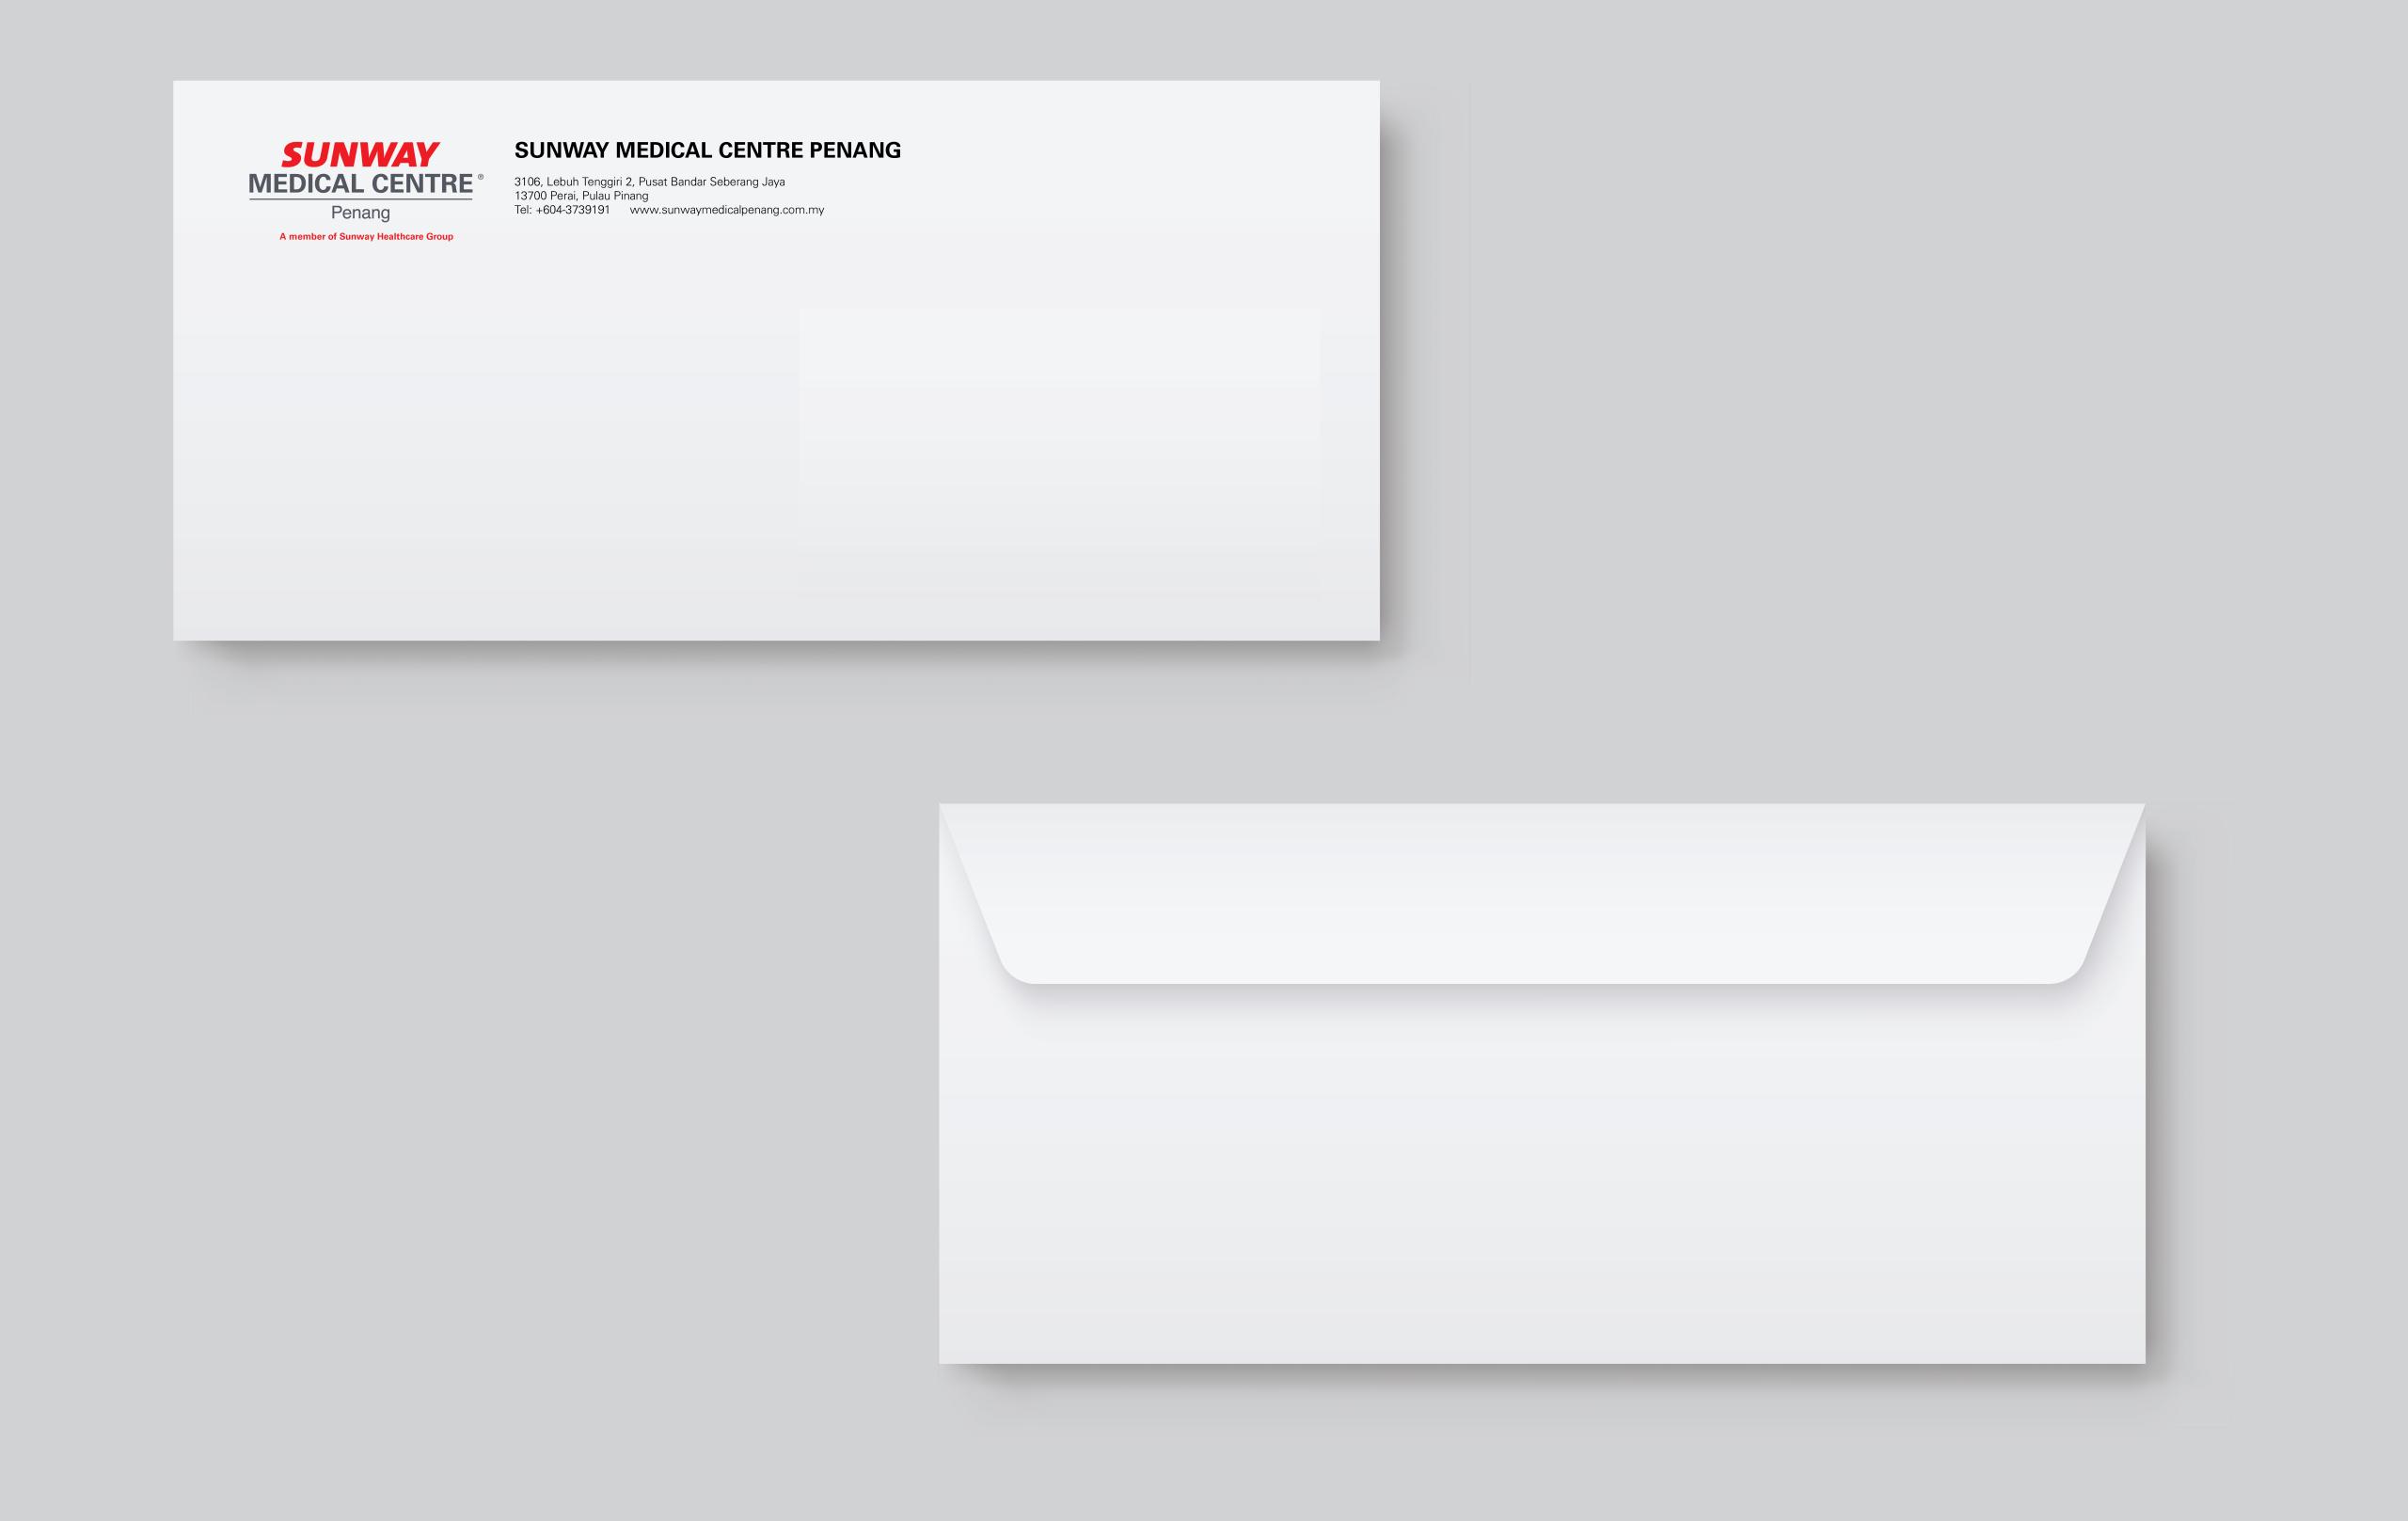 Envelope with Sunway Medical Centre Penang logo/emblem